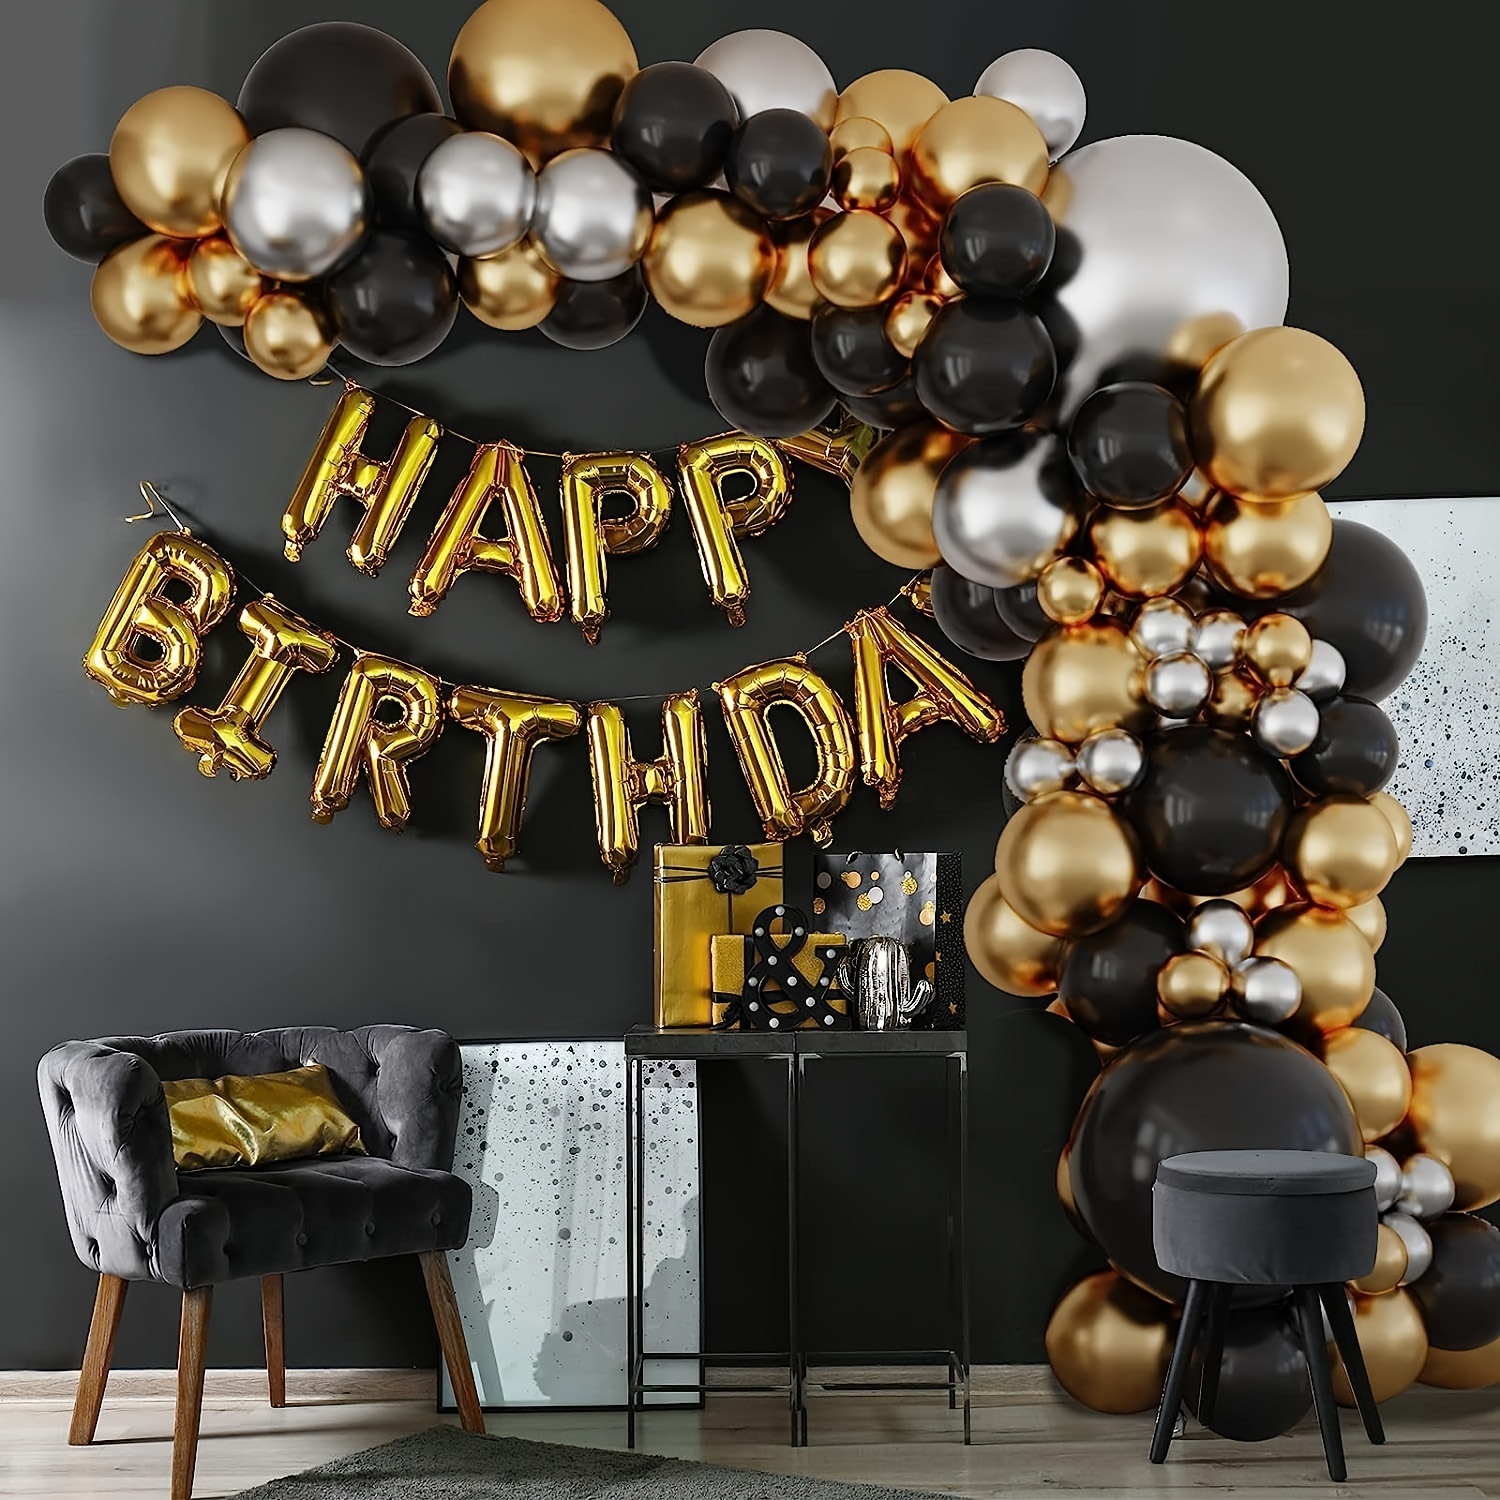 Conjunto de globos de látex con grabado de cumpleaños